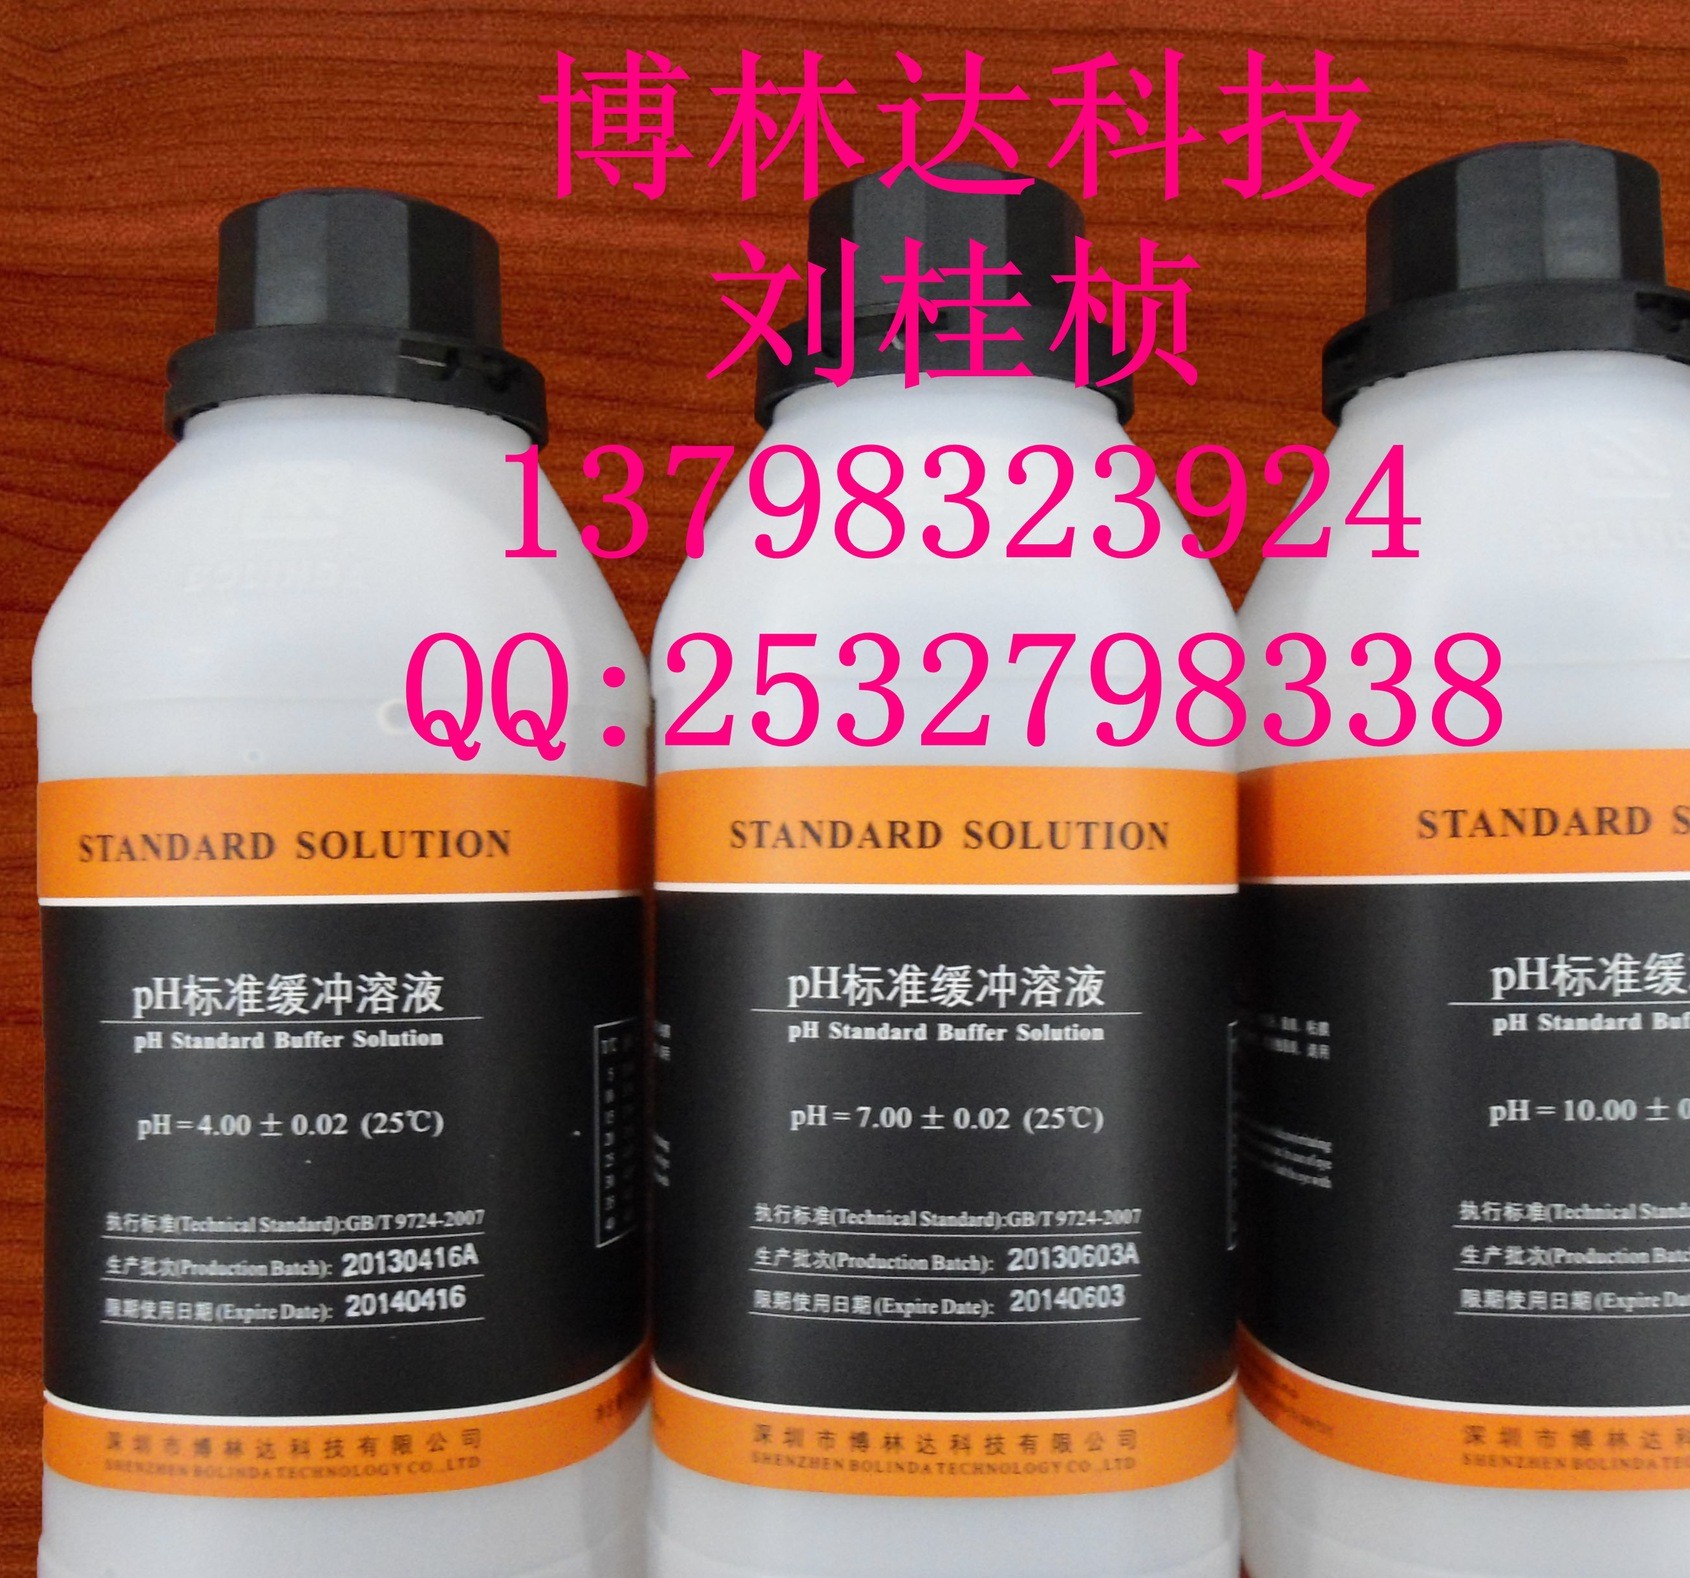 pH = 11.00 plusmn; 0.0220 PH缓冲标准溶液校正标准品